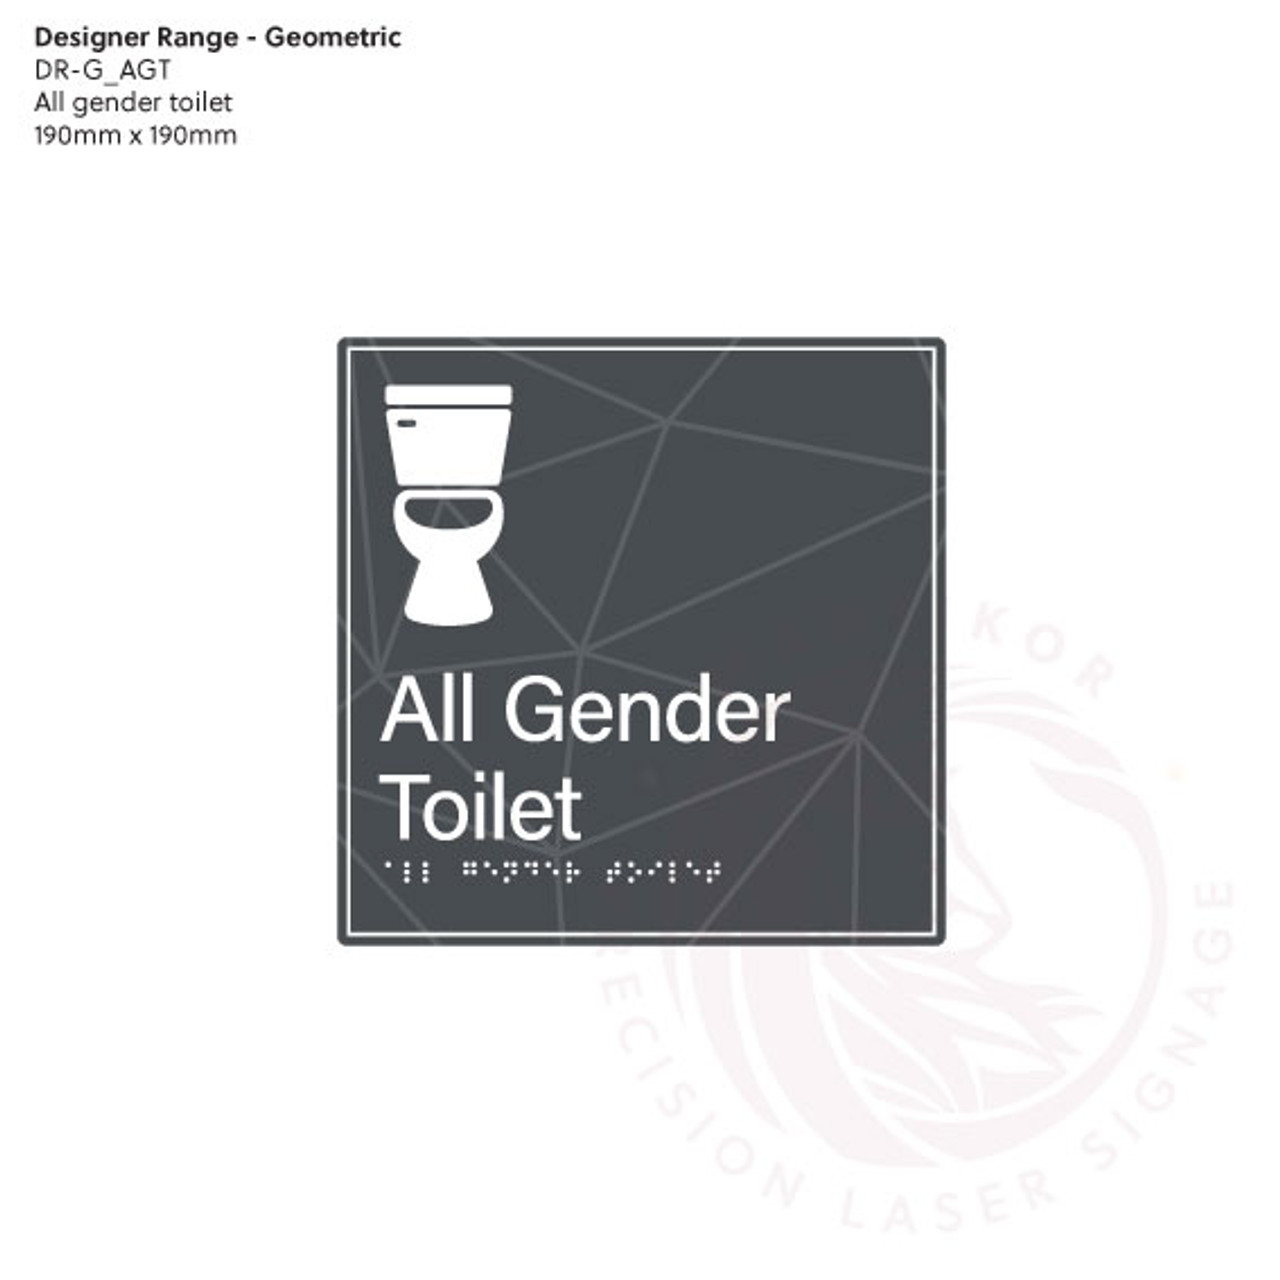 Geometric Designer Range - All Gender Toilet